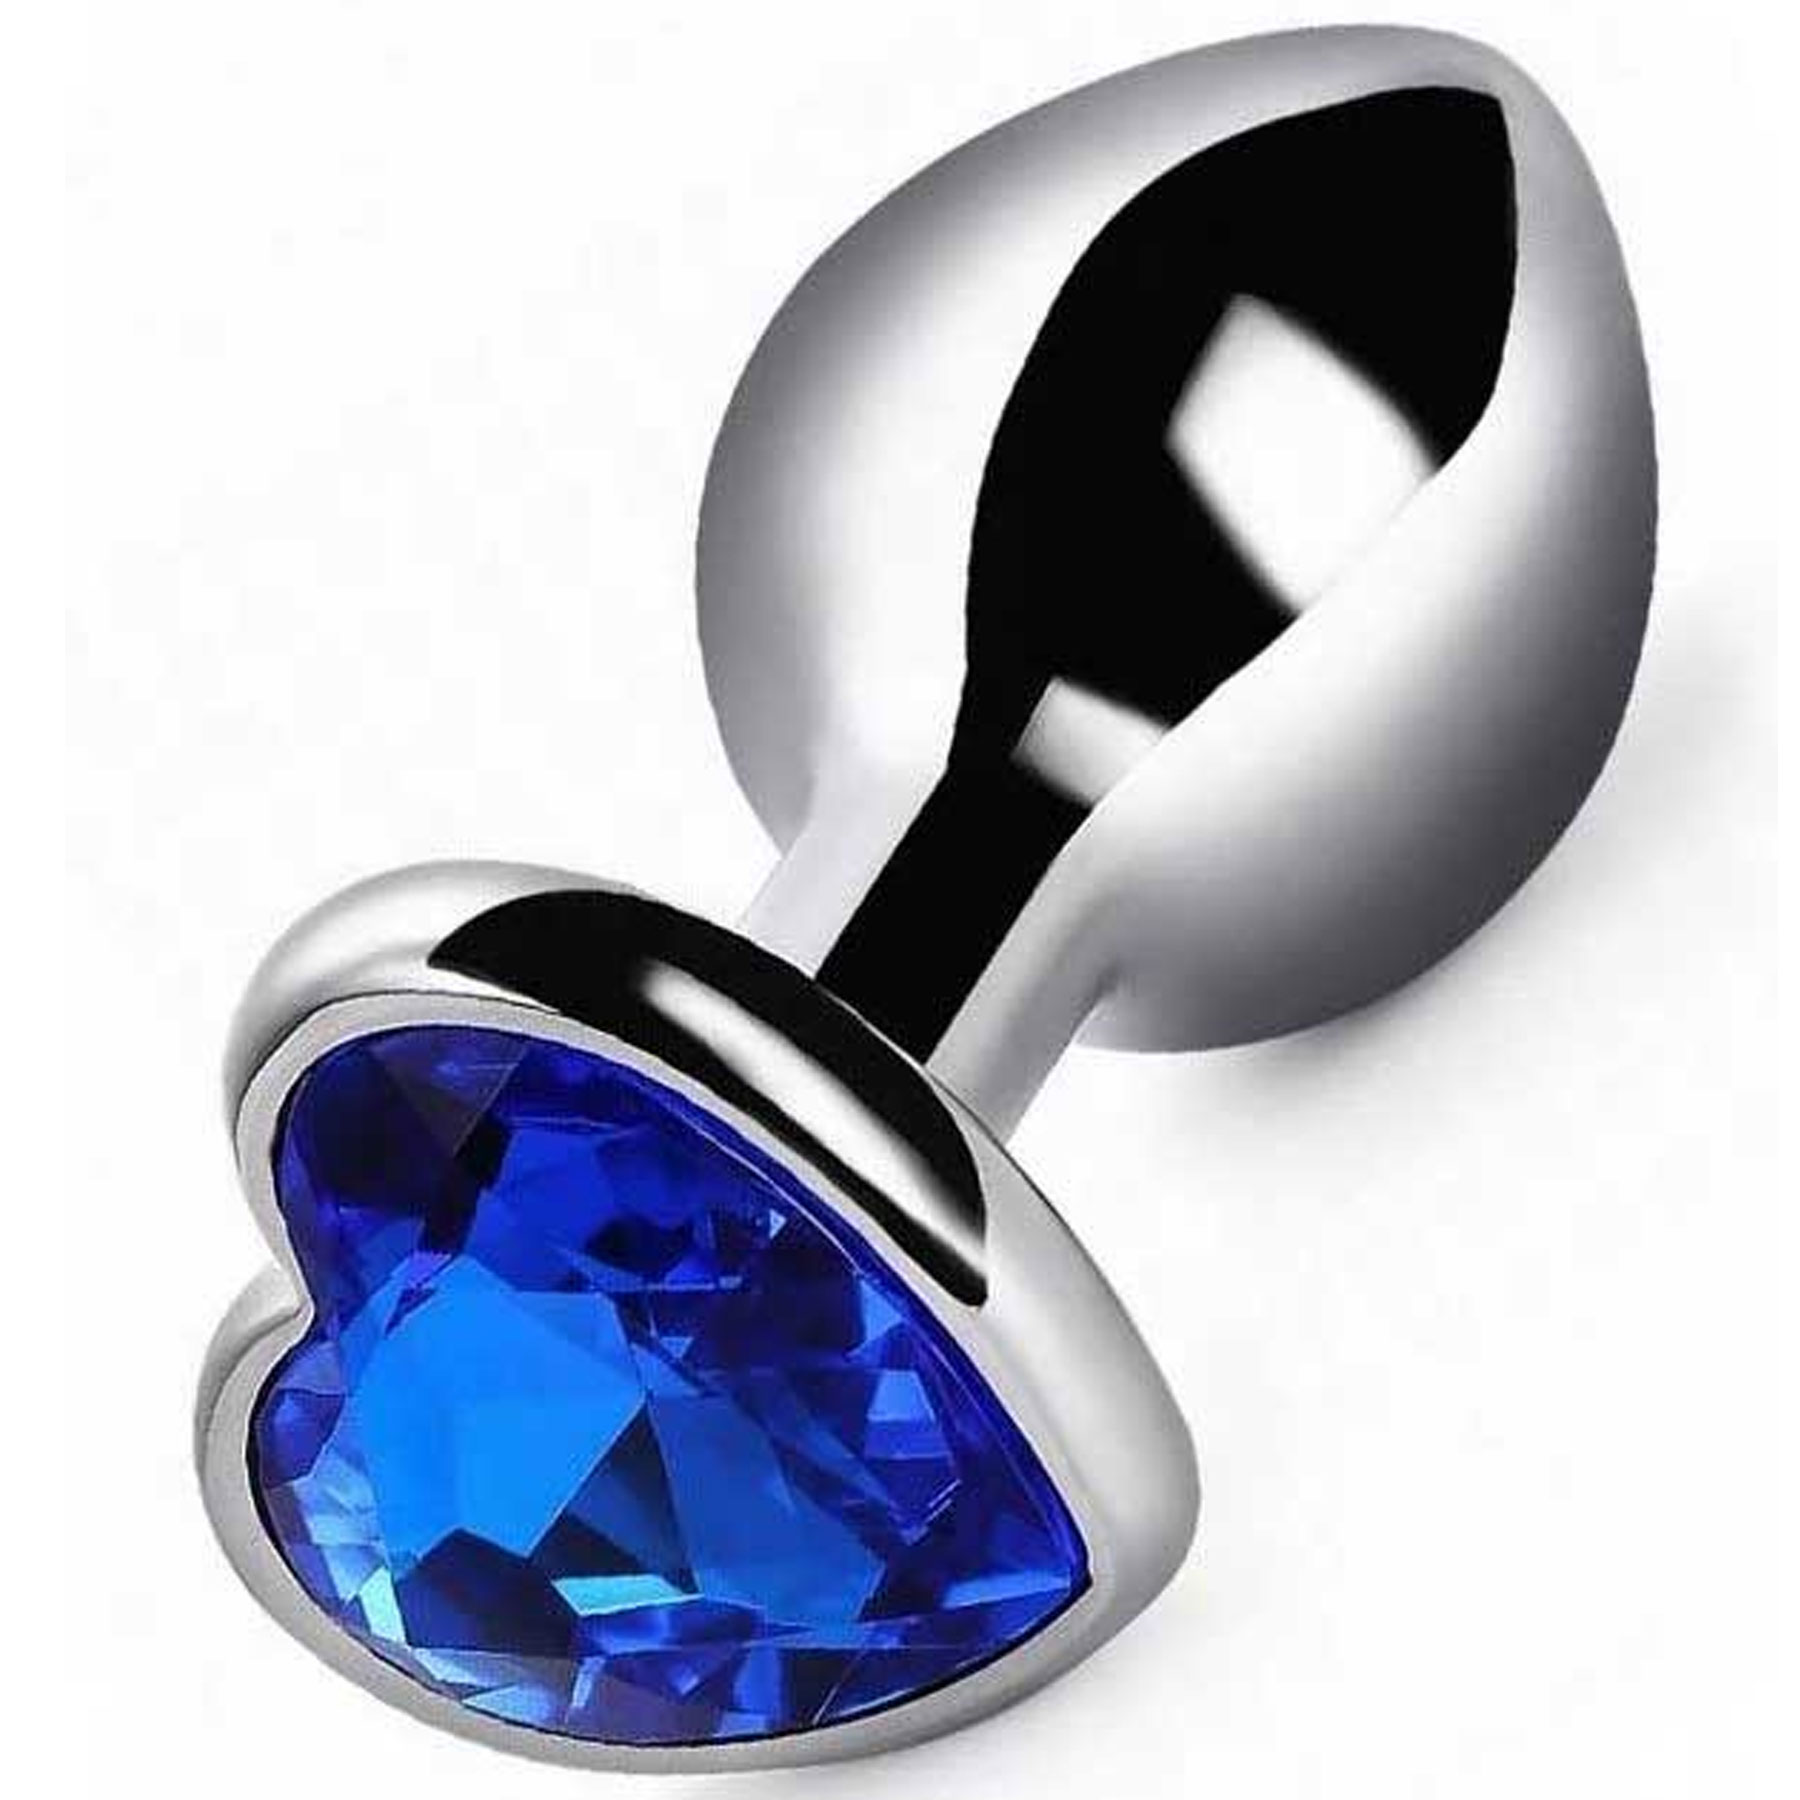 Kalpli Mücevherli Gümüş Rengi Çelik Anal Plug - 9.5 cm Boy x 4 cm Çap Büyük Boy C-401008